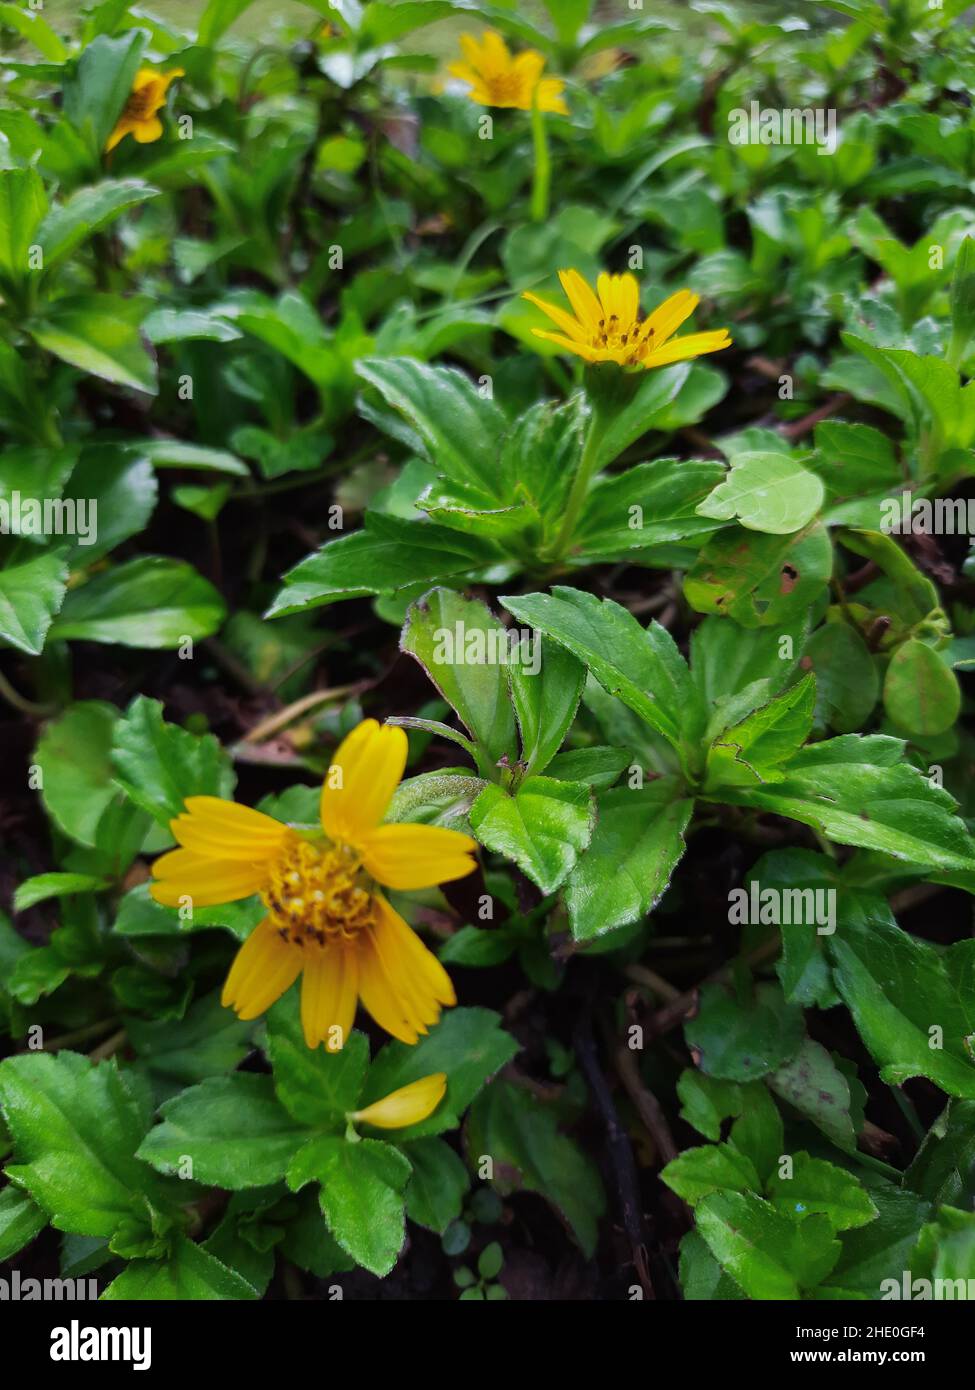 Gros plan des feuilles de plantes vertes et des fleurs jaunes de collotheca trilobata Banque D'Images